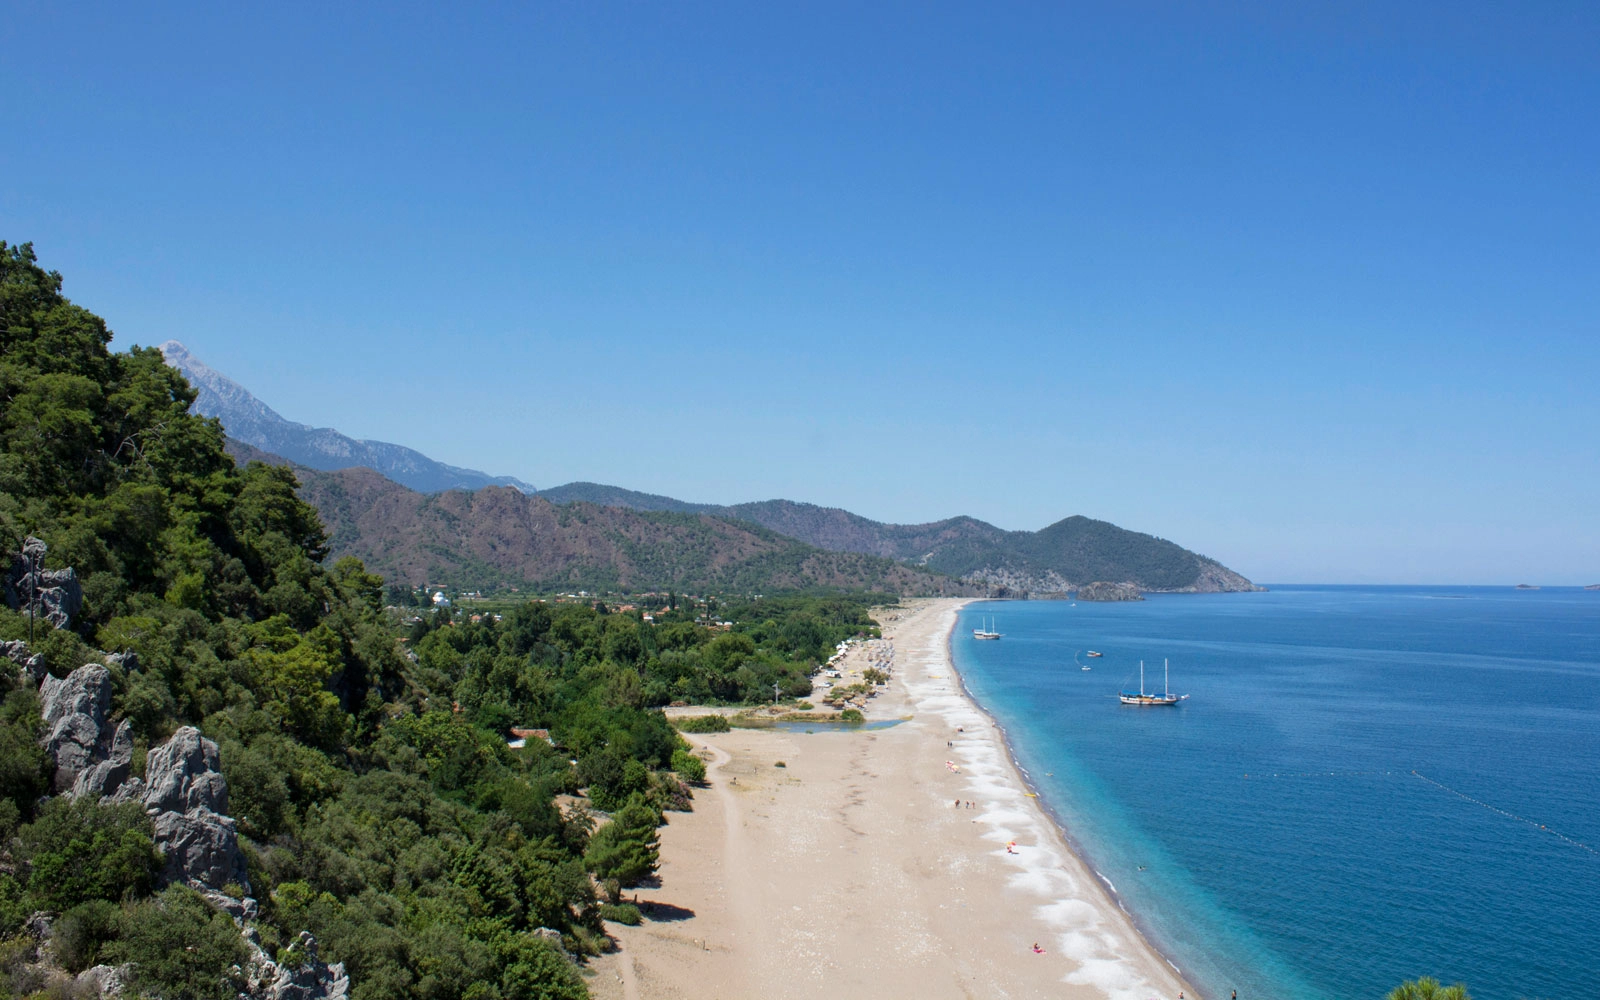  Cirali  strand - Turkish Mediterranean coast